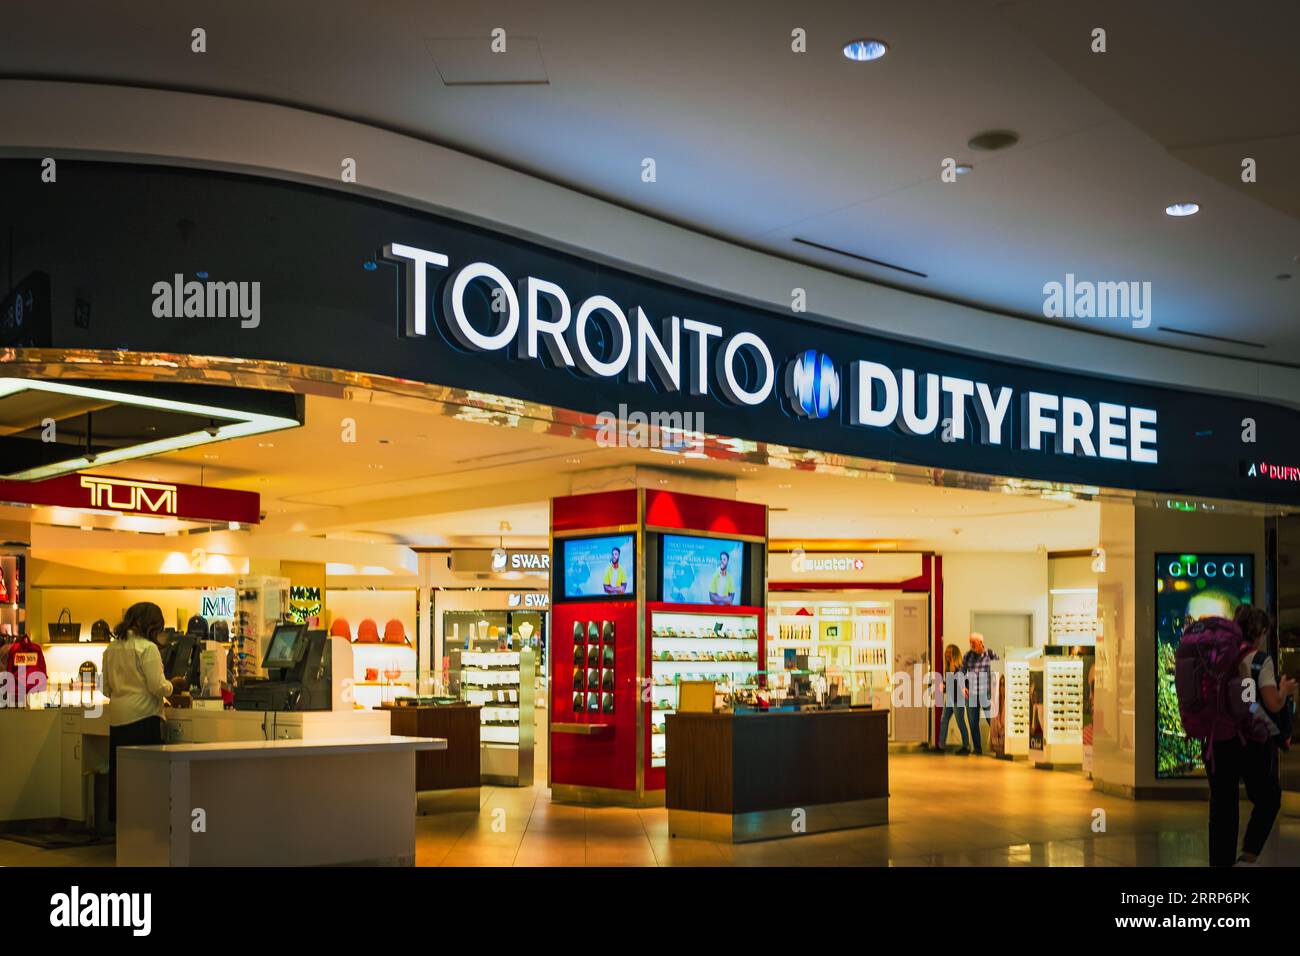 Duty Free Shop im Toronto Pearson International Airport Kanada. Duty-Free-Geschäfte sind Einzelhandelsgeschäfte, die von der Entrichtung nationaler Steuern befreit sind Stockfoto